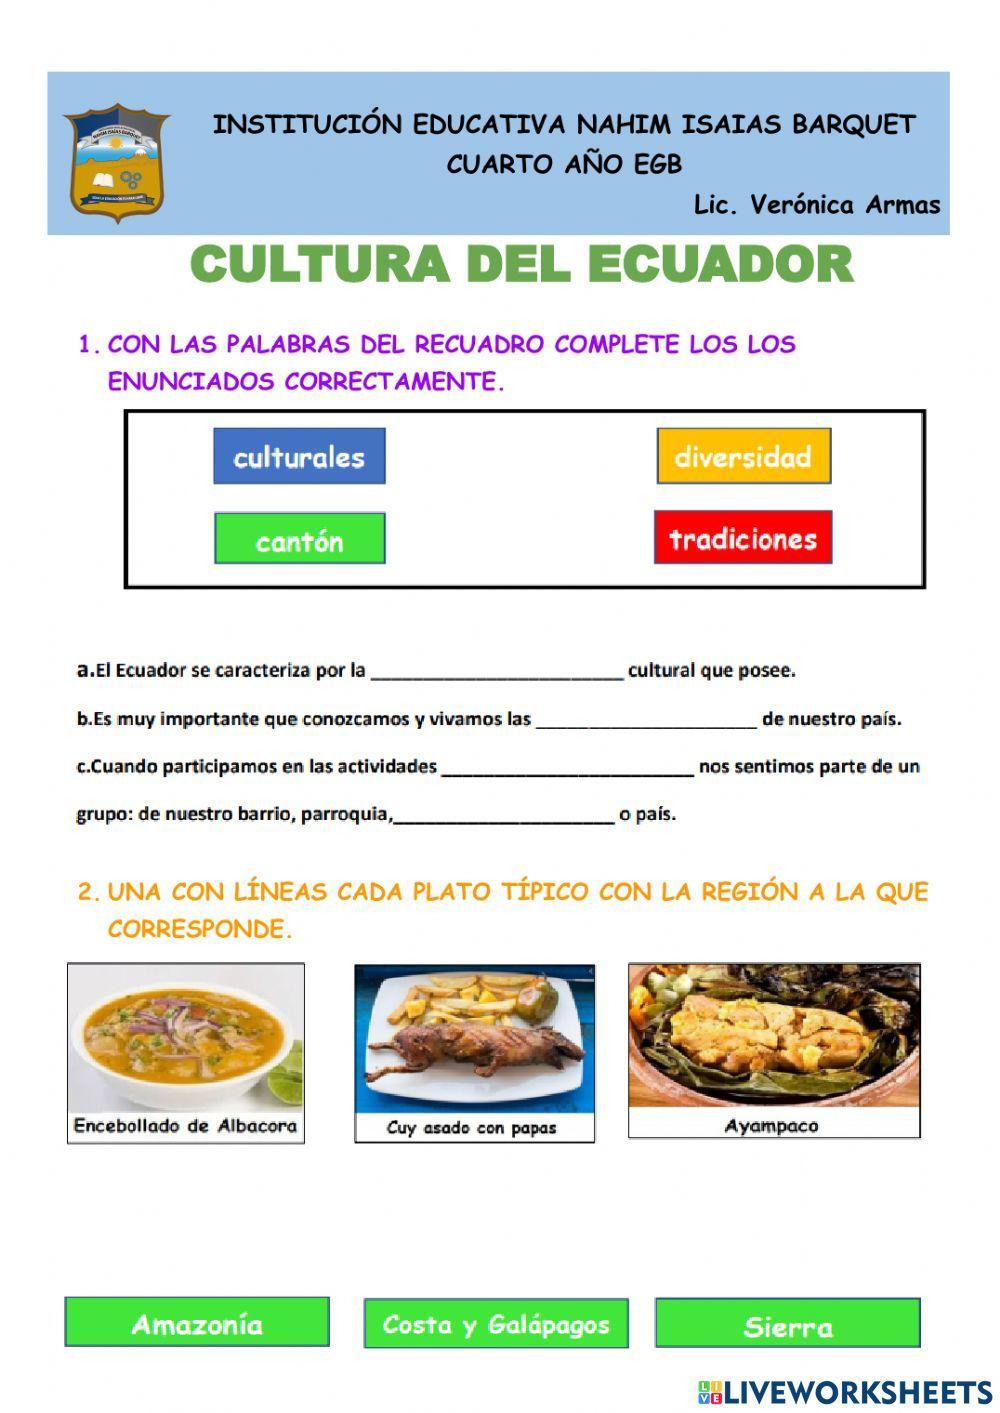 Cultura del ecuador